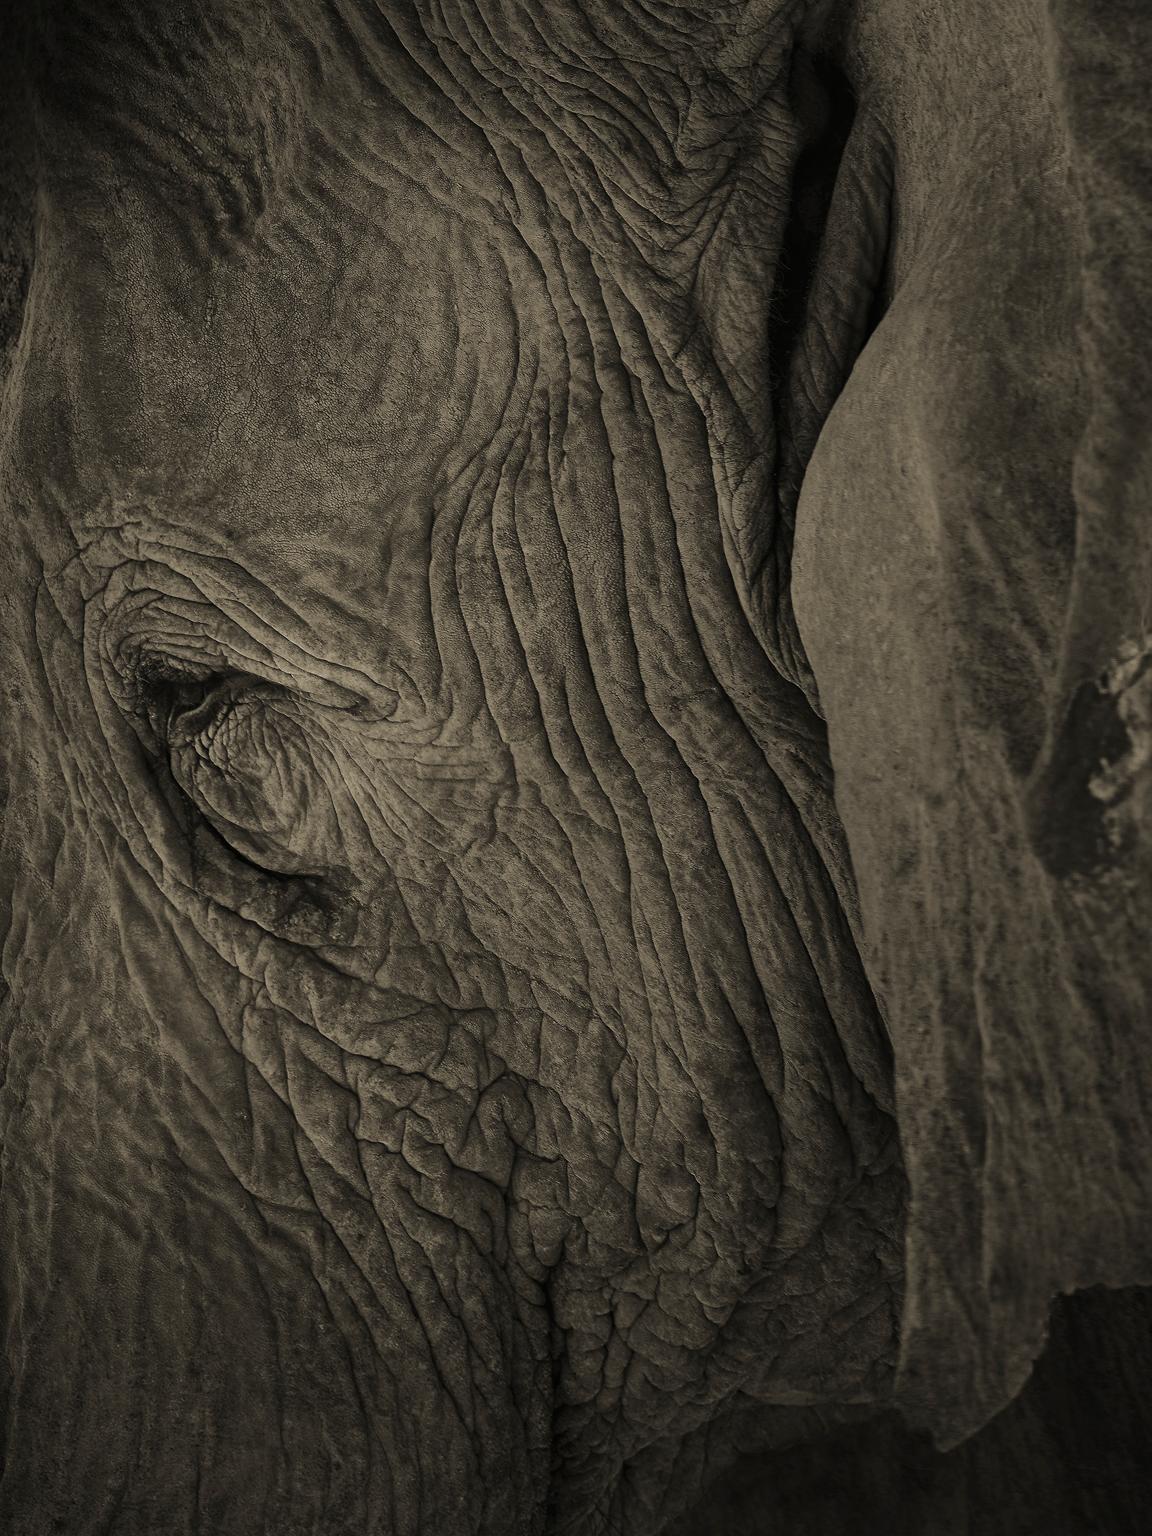 Elephant-03, Namibia, 2016. Archivalischer Pigmentdruck. Auflage von 7.
Signiert, datiert und nummeriert vom Künstler.

Chris Gordaneer ist einer der leidenschaftlichsten Fotografen unserer Zeit. Seine Fotografie bewegt sich an der Schnittstelle